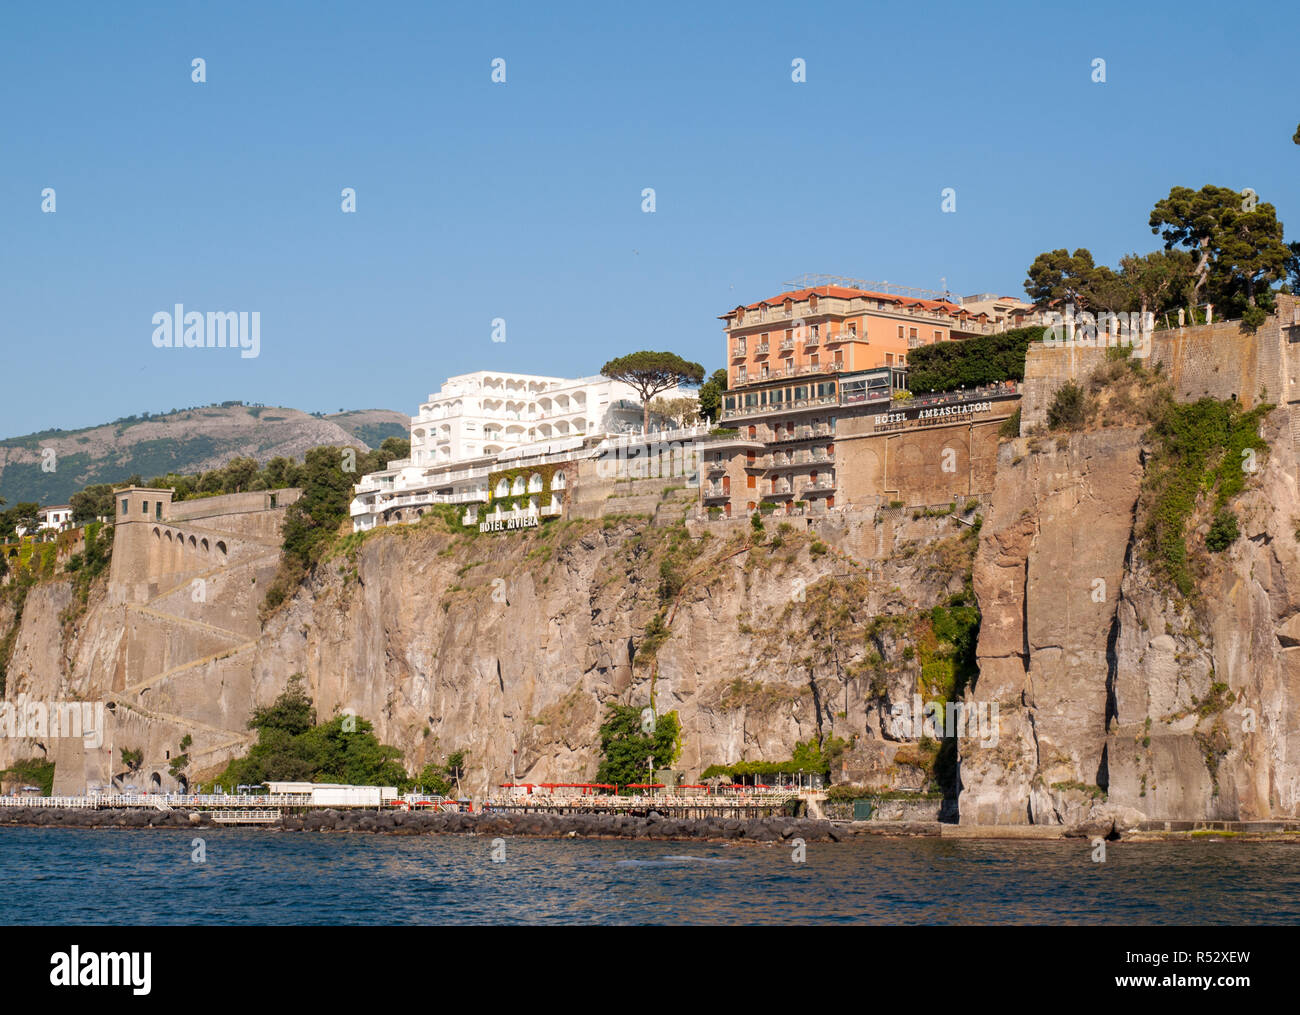 Vista di case e alberghi sulle scogliere di Sorrento. Golfo di Napoli, campania, Italy Foto Stock